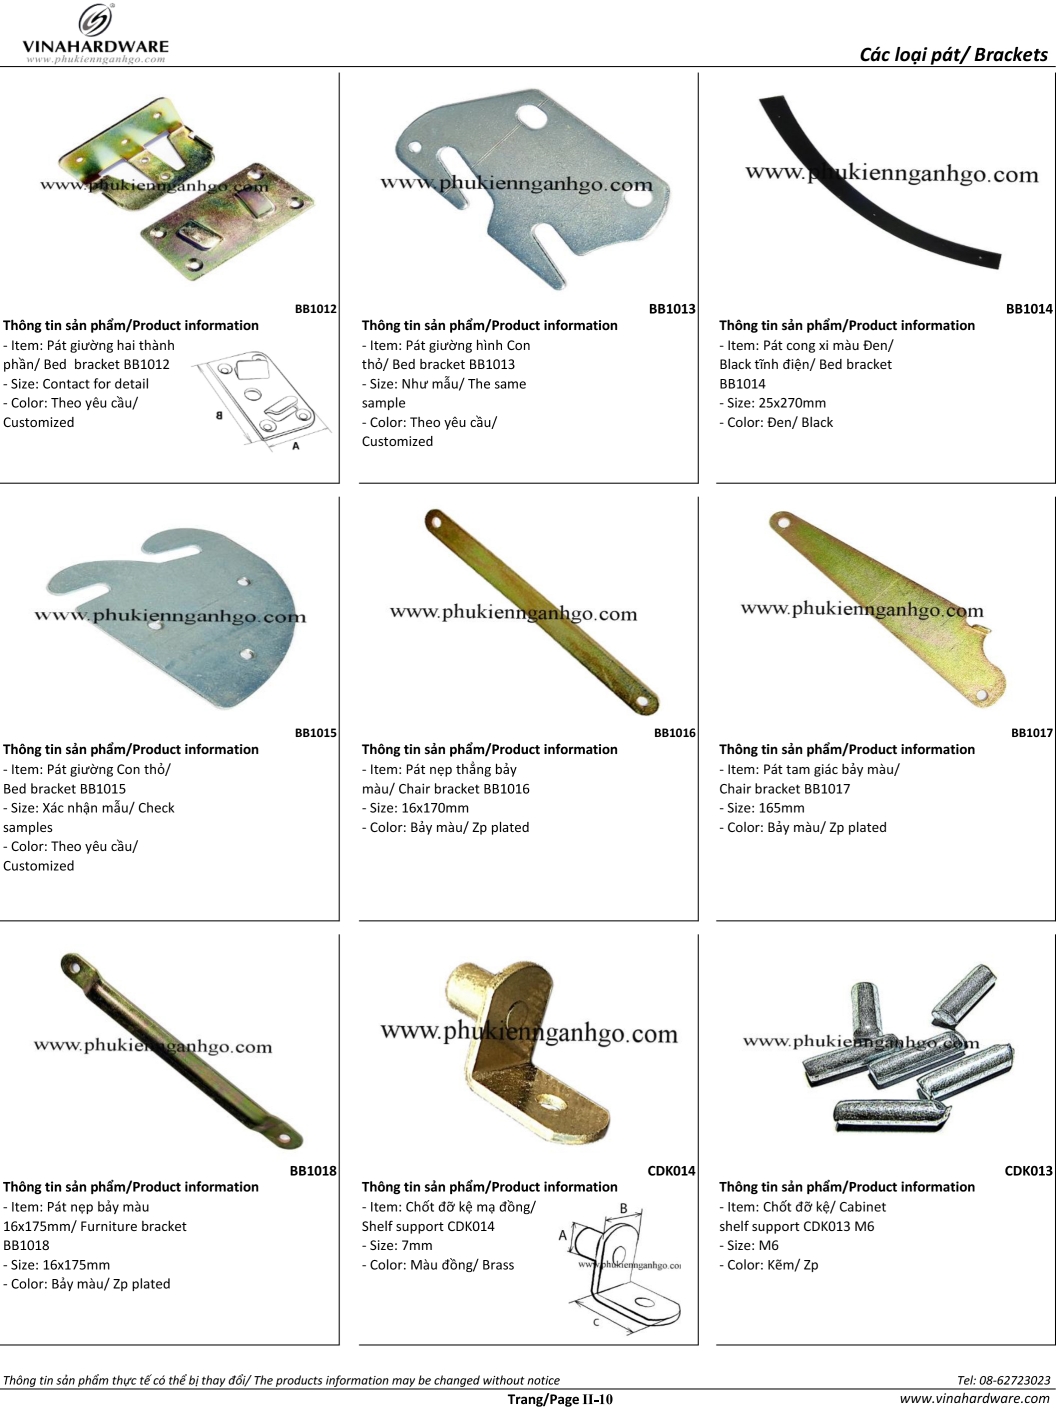 Catalogue - Các loại pát: pát sắt, pát âm, pát đỡ kệ